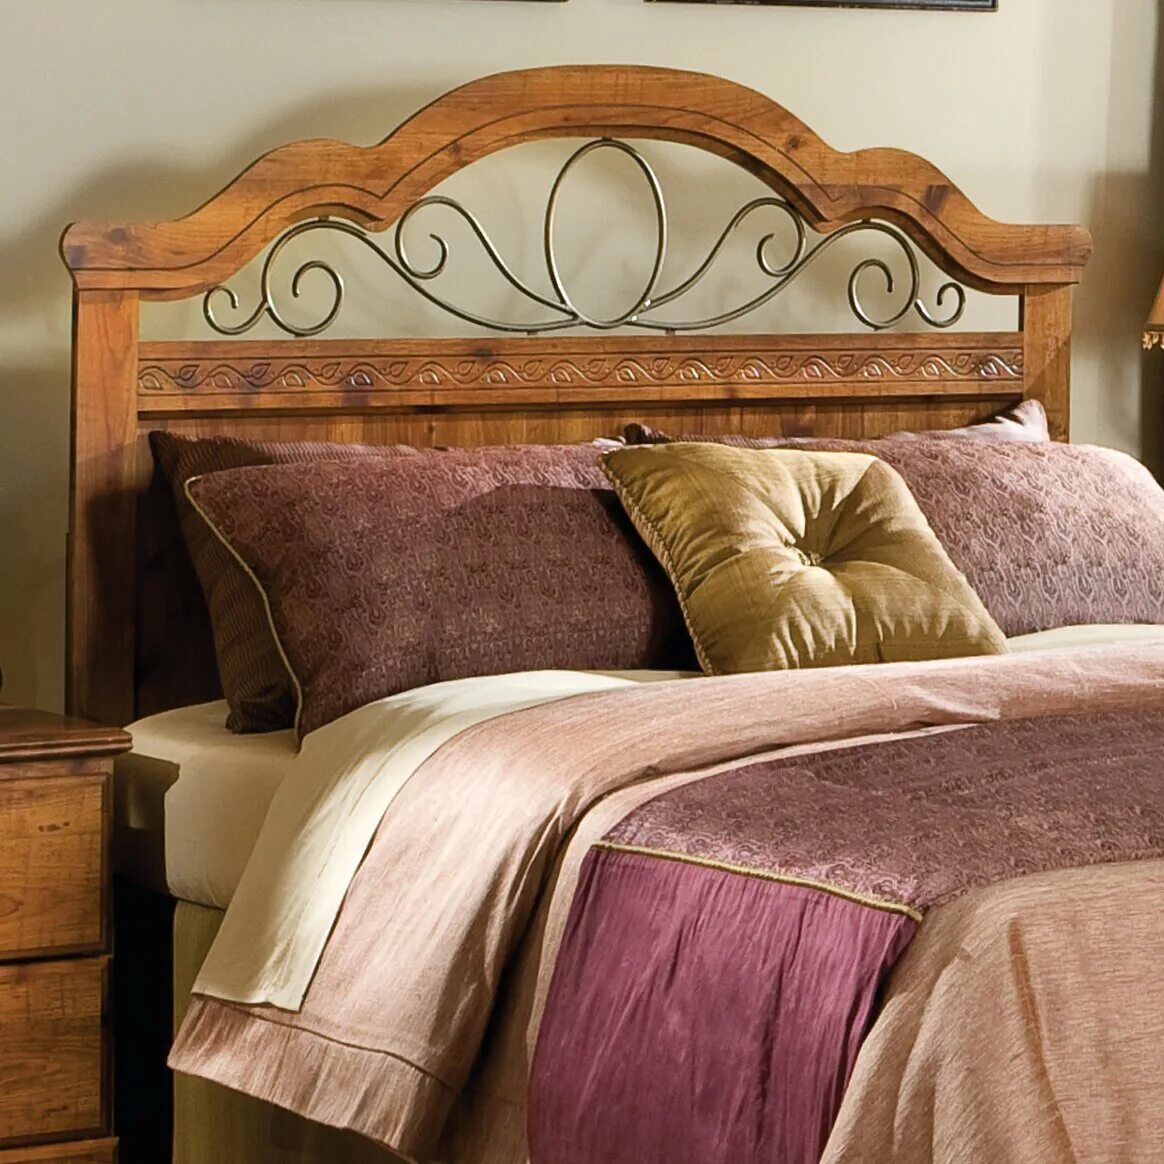 Изголовье кровати из дерева. Кровать с деревянным изголовьем. Кровать с деревянной спинкой. Спинка кровати из дерева.